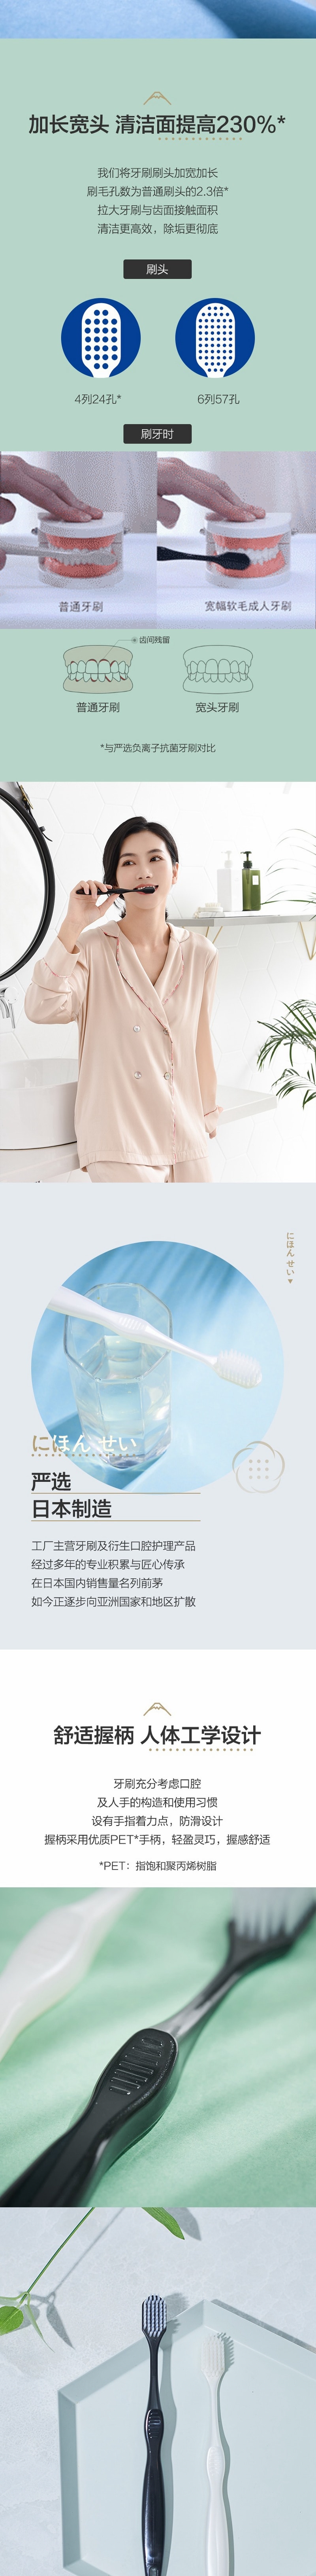 网易严选2支装 日本制造 宽幅软毛成人牙刷  2支装(白色)